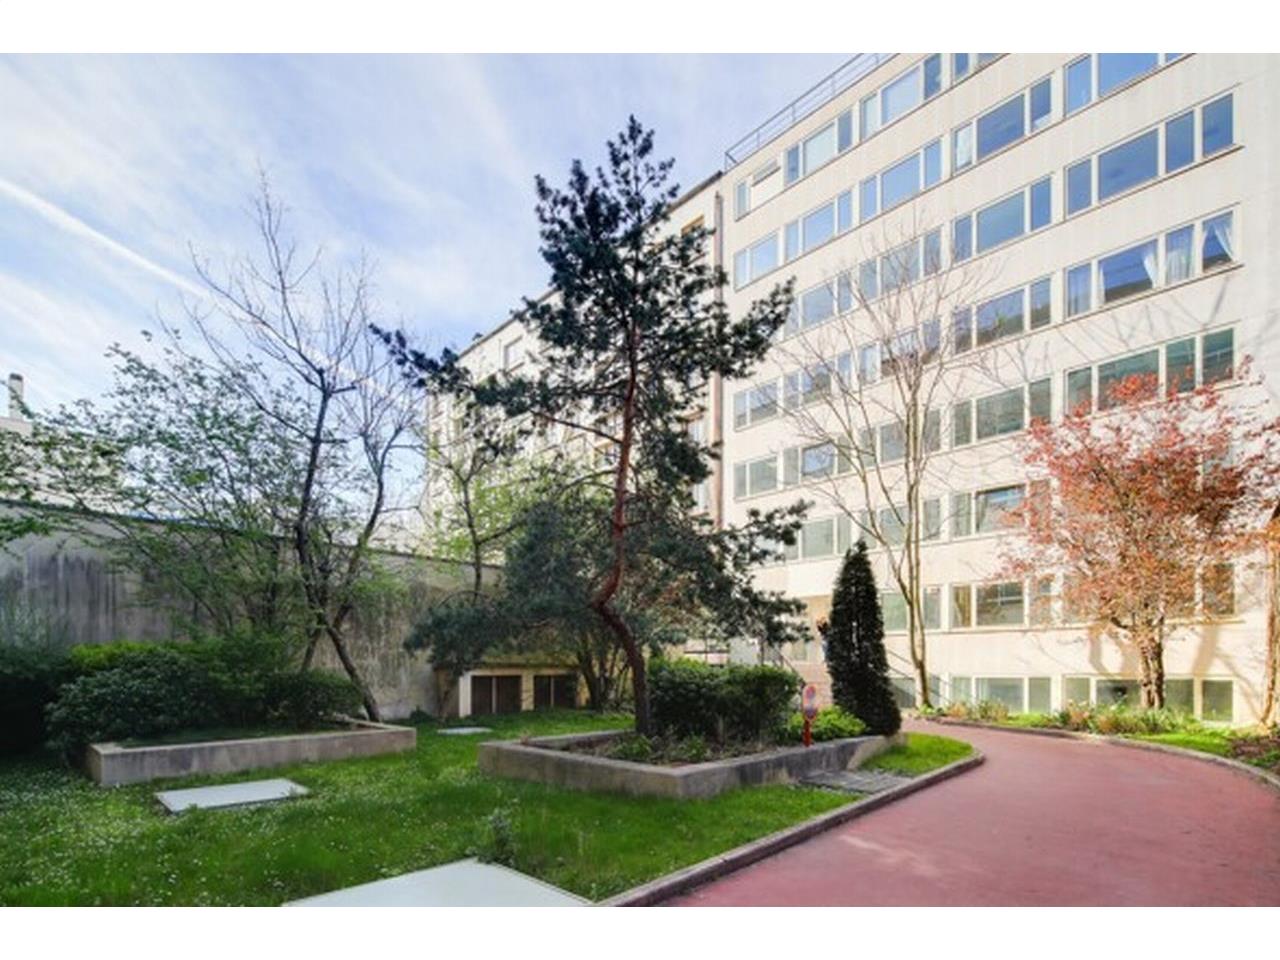 Location bureau Neuilly-sur-Seine 486m²